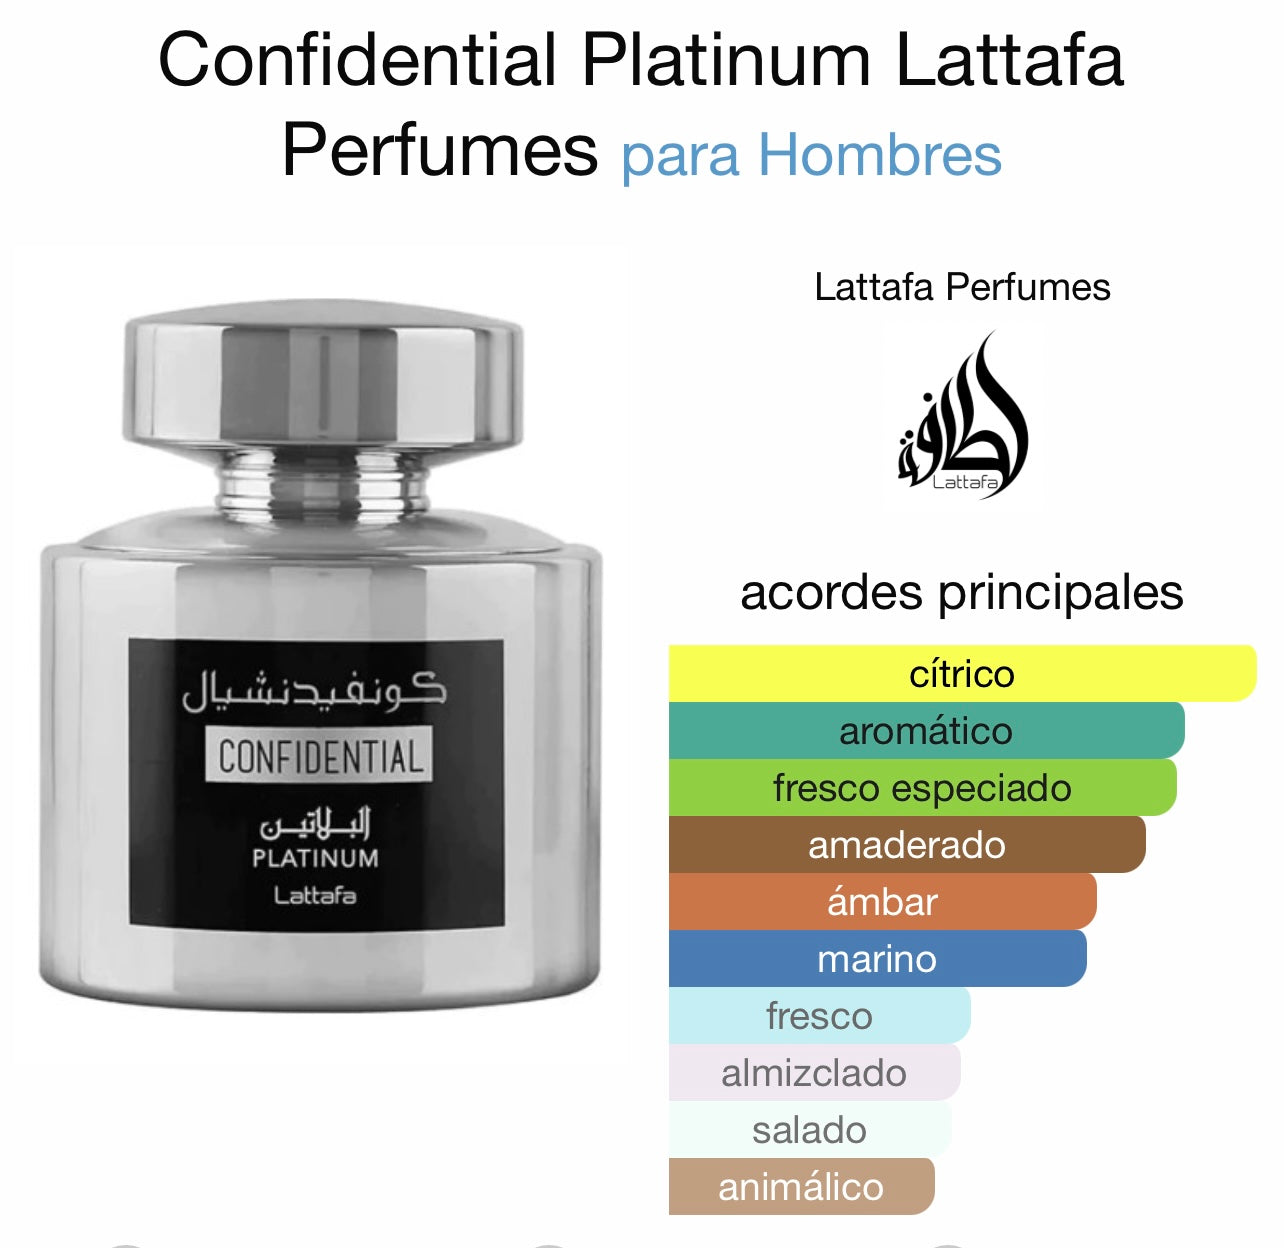 Confidential silver Lattafa